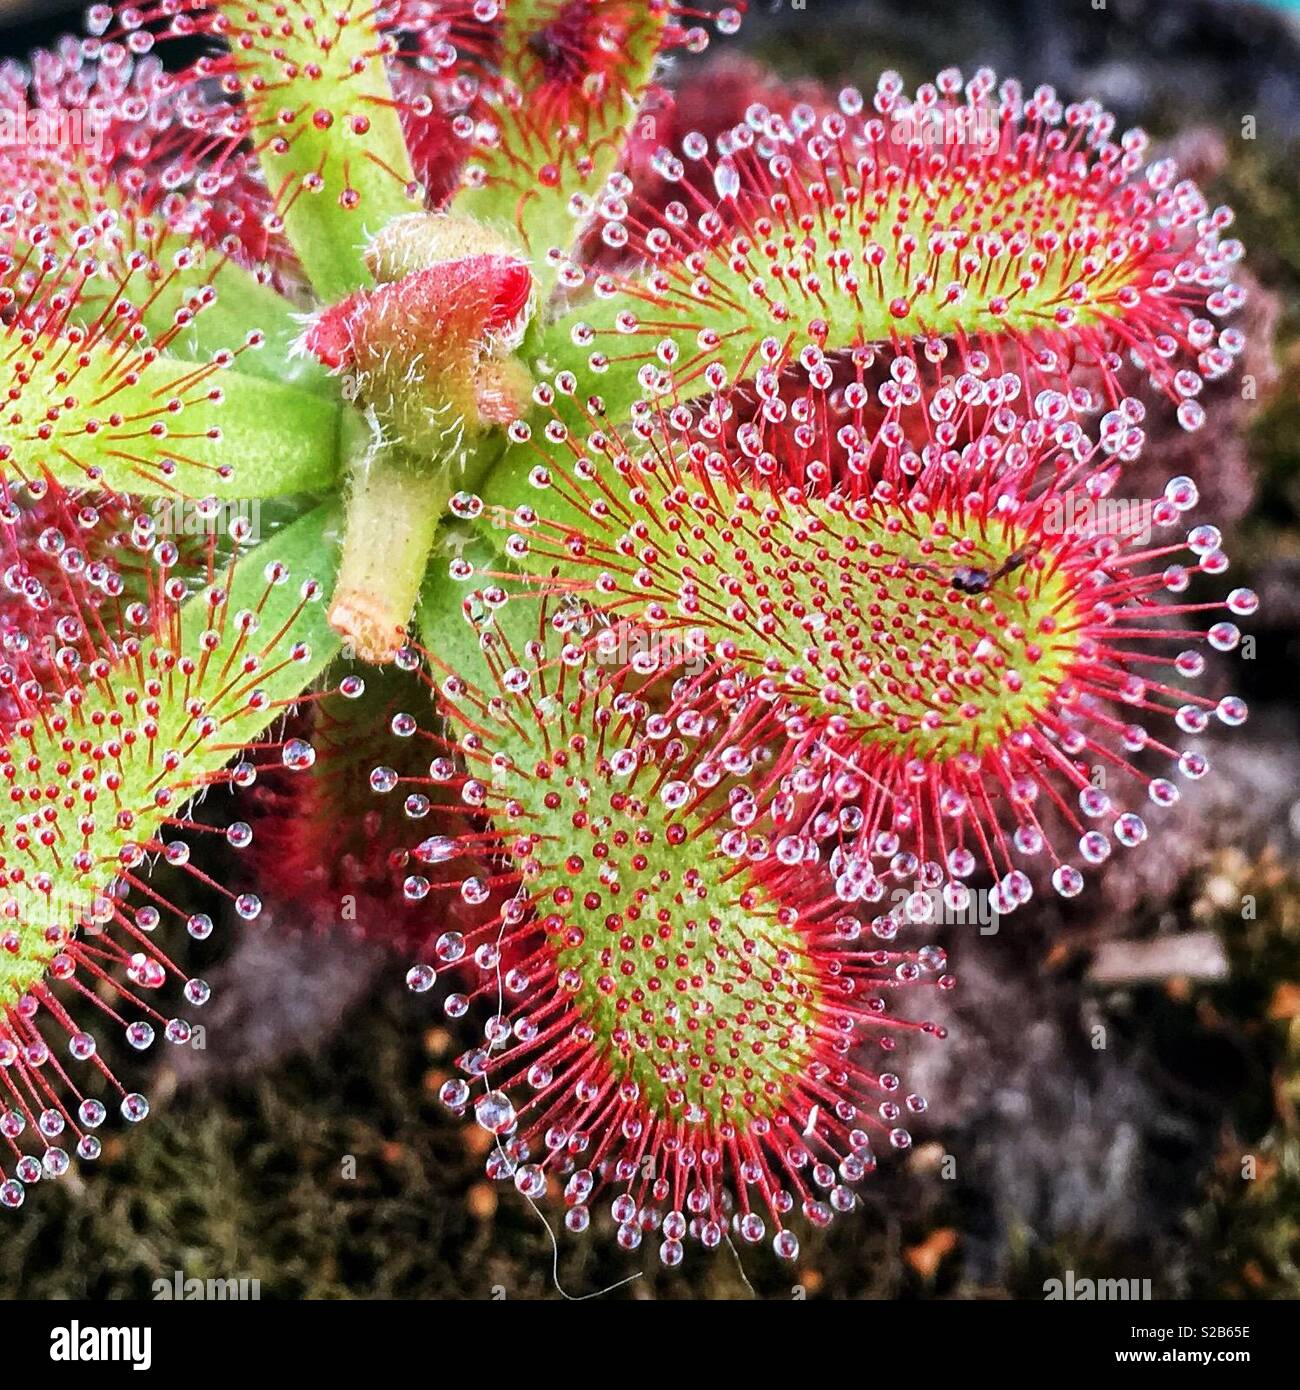 Plantes carnivores - Rossolis Photo Stock - Alamy